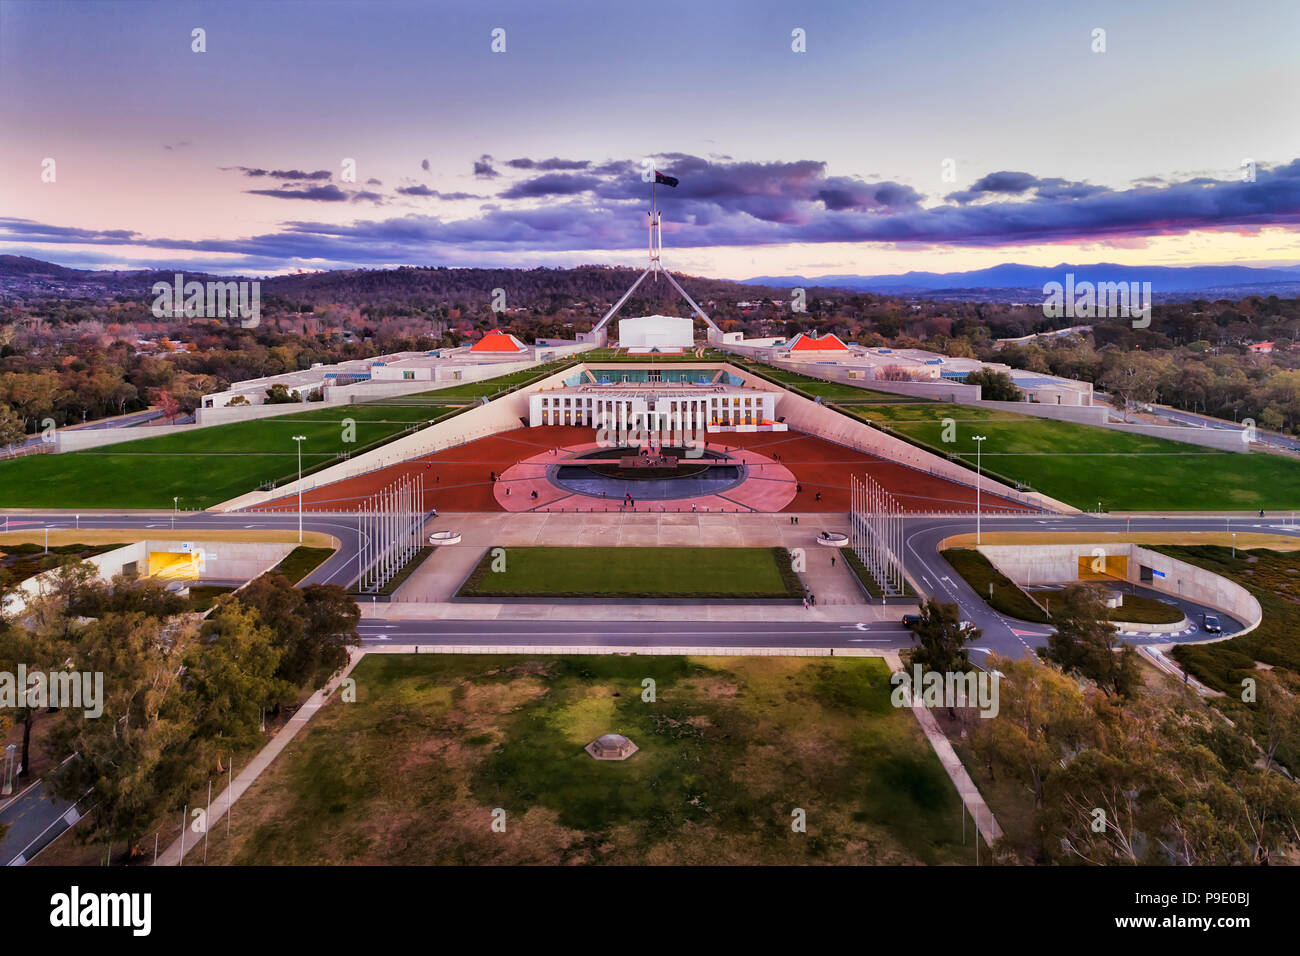 Luftbild um Capitol Hill in Canberra - Australian Capital Territory. Fassade des öffentlichen Gebäude mit Square und den umliegenden Park Land Stockfoto